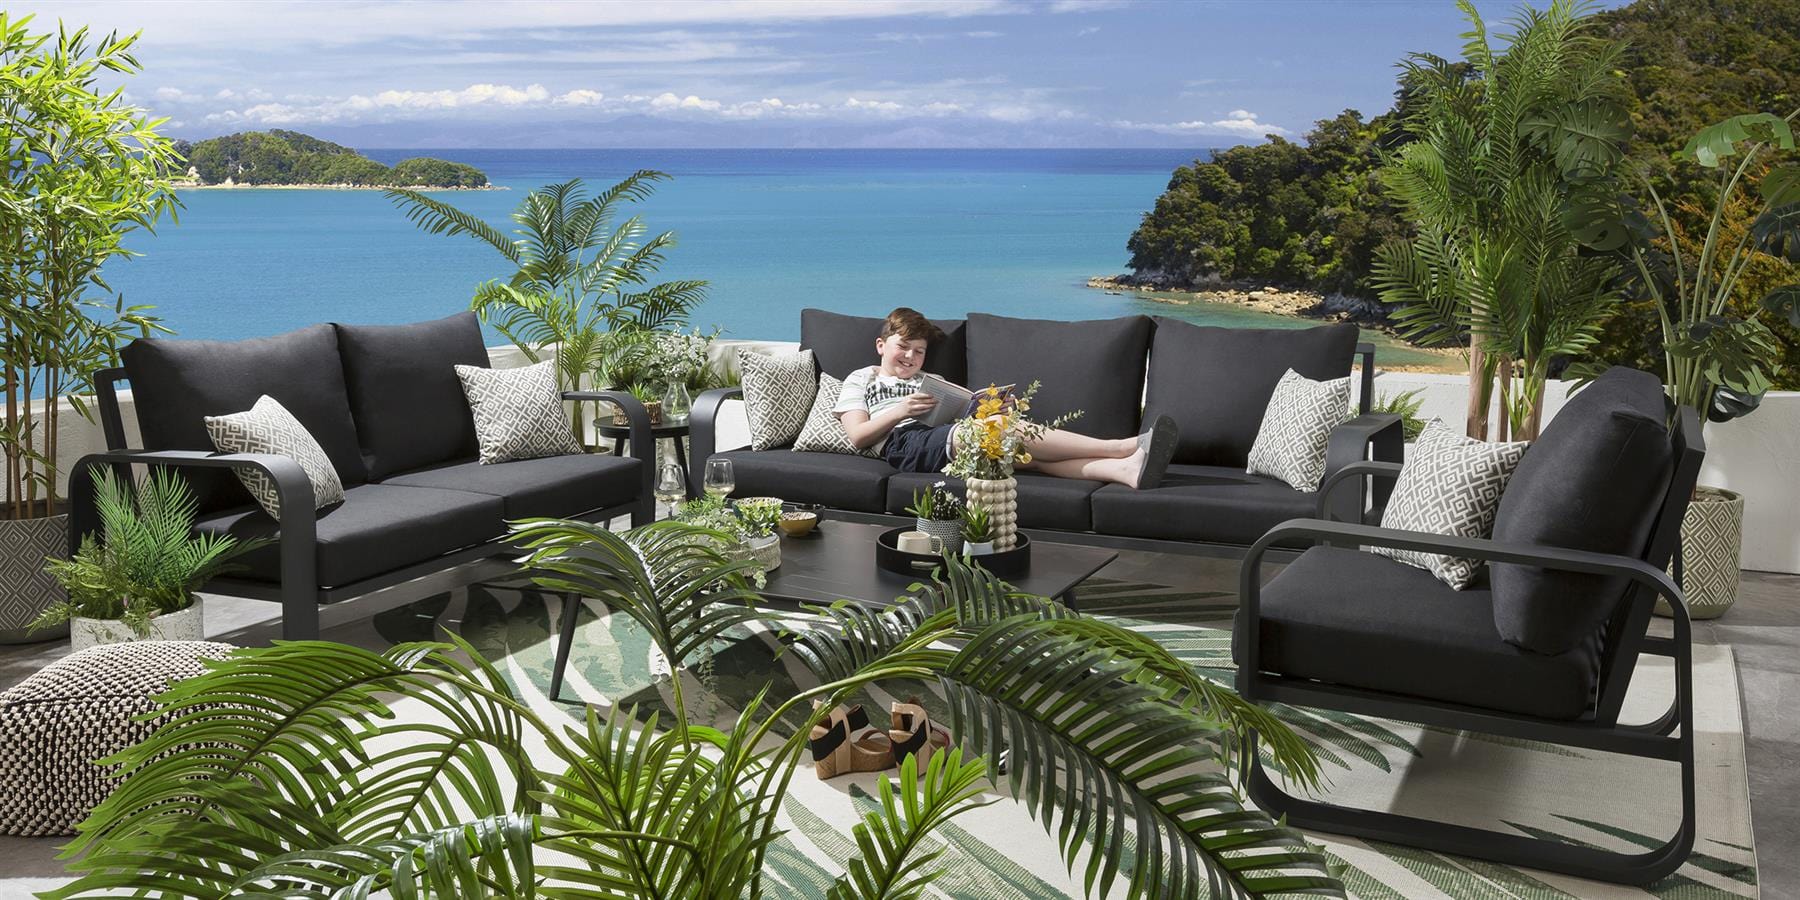 Quatropi Freddy 6 Seater Outdoor Garden Sofa & Armchair Set Charcoal